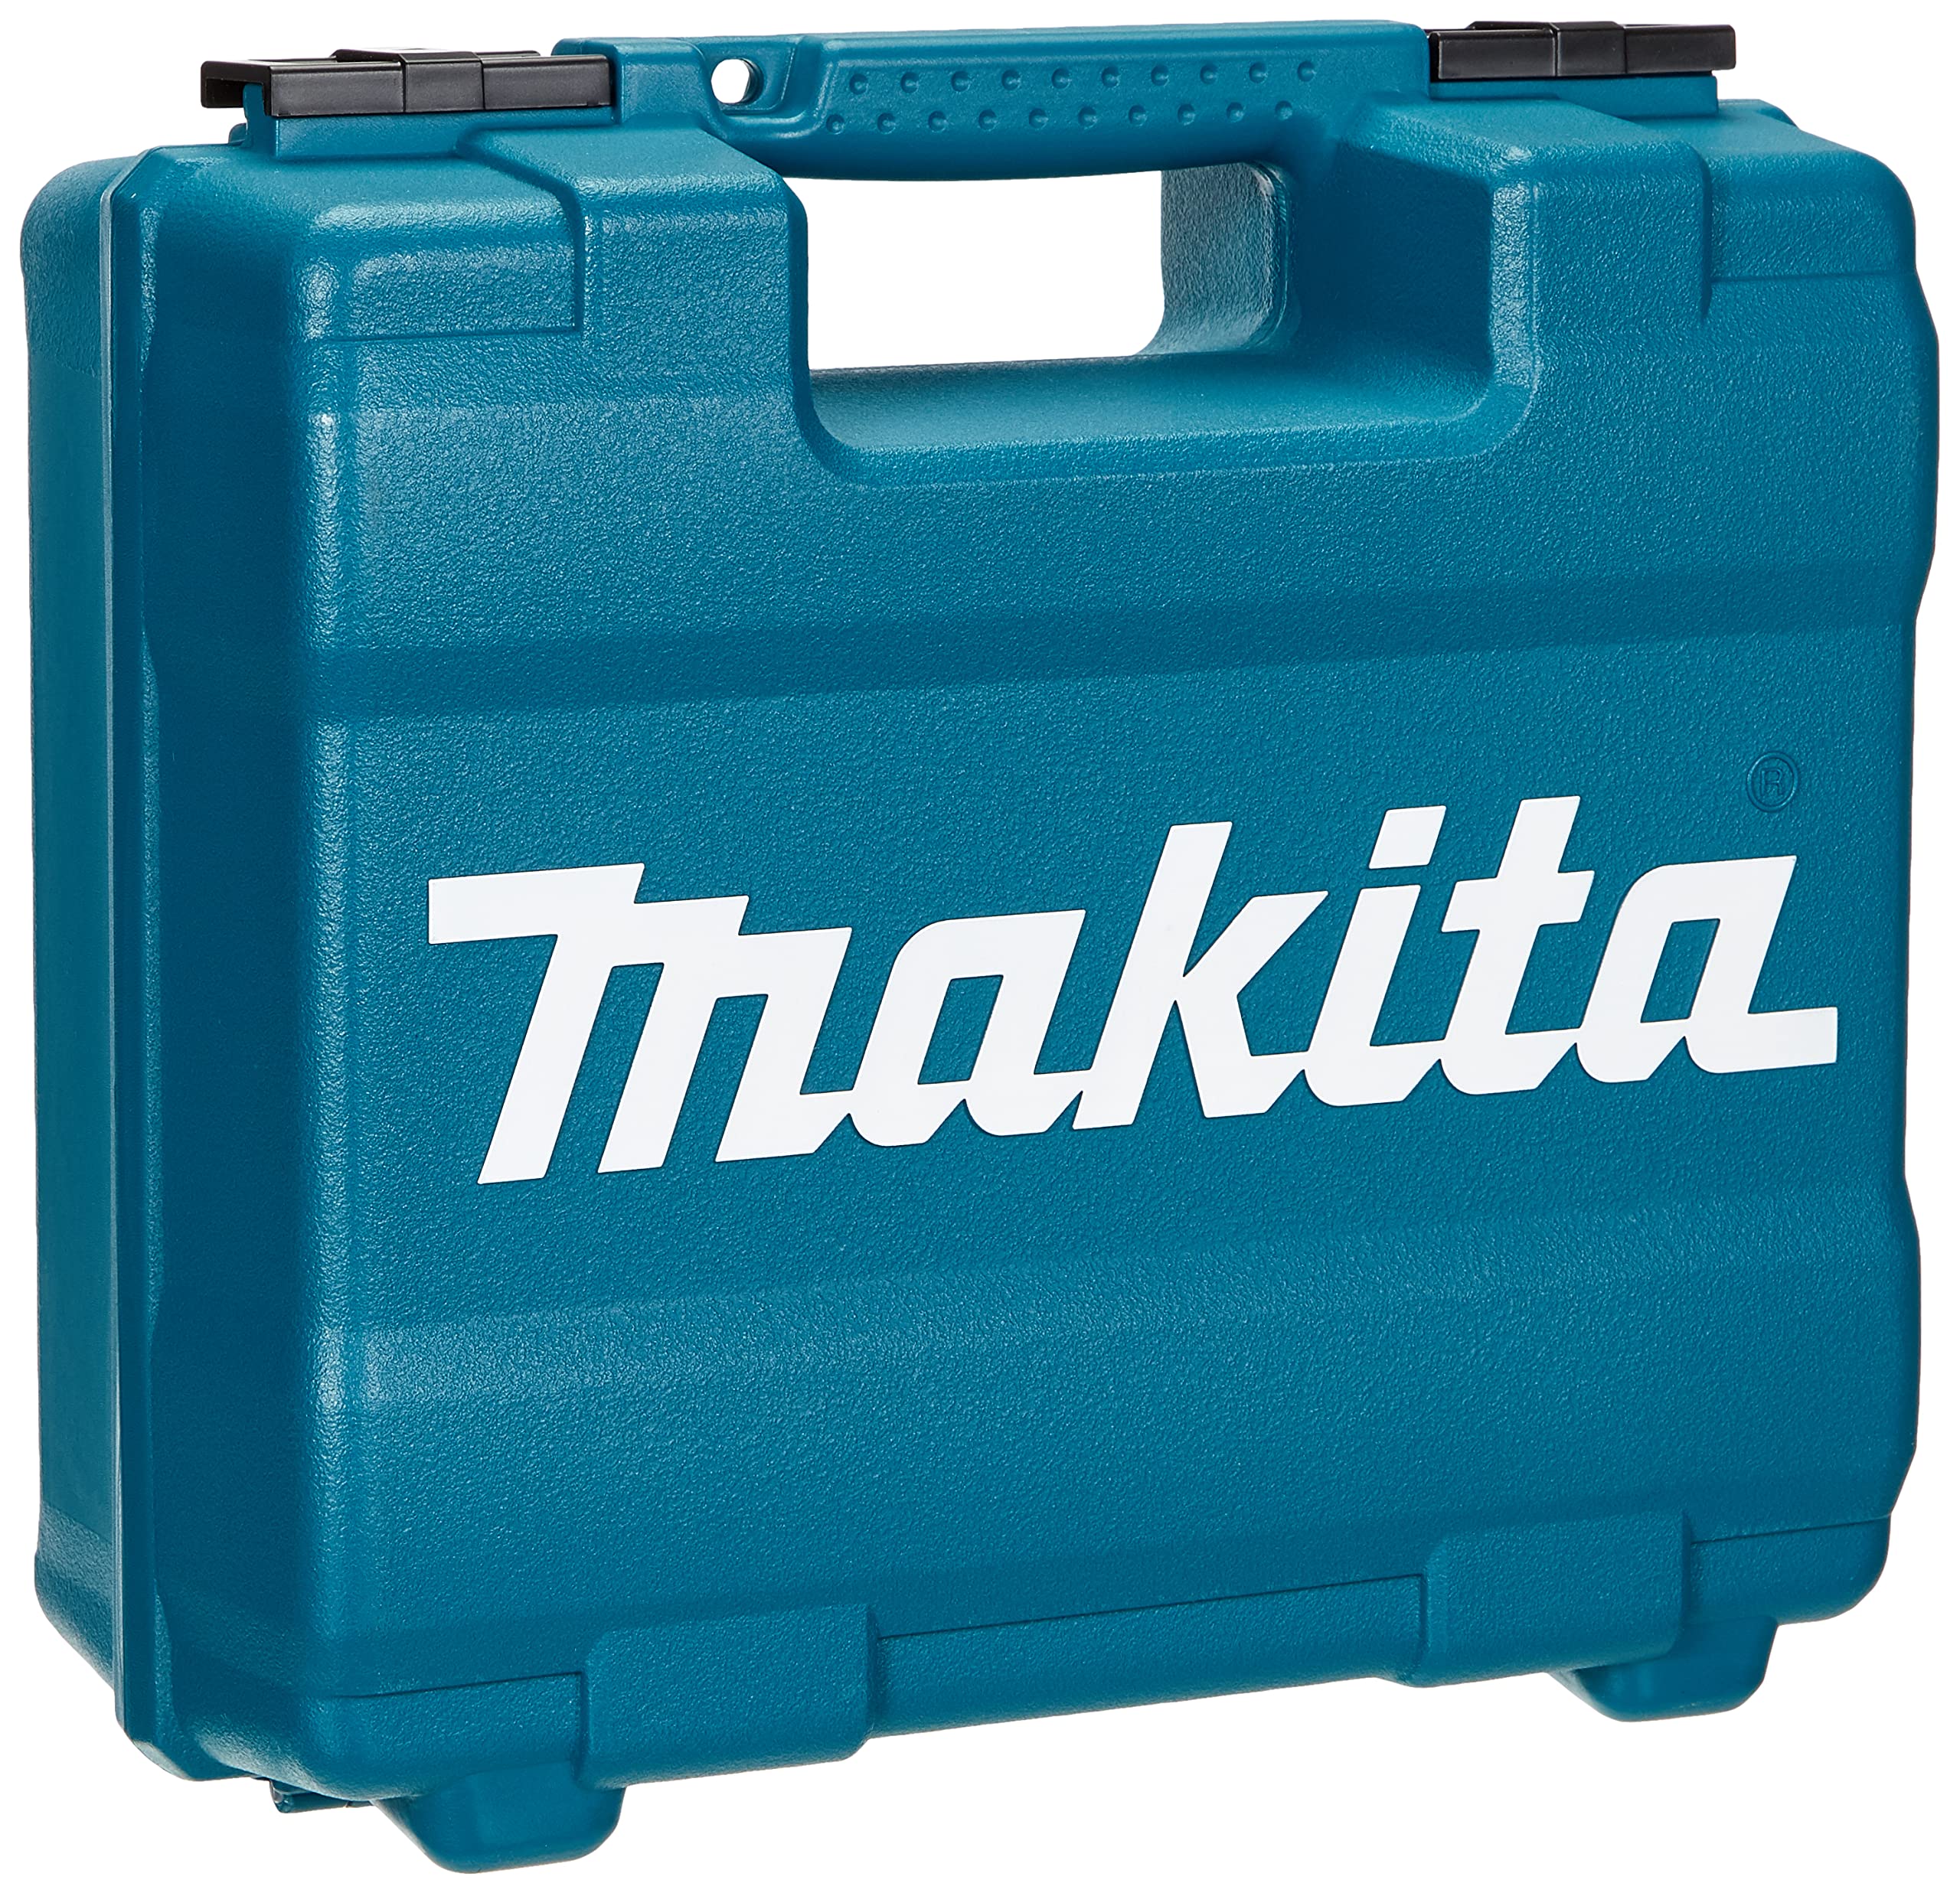 Makita HP1631KX3 Schlagbohrmaschine im Koffer, 710 W + 74tlg. Zubehör, Blau